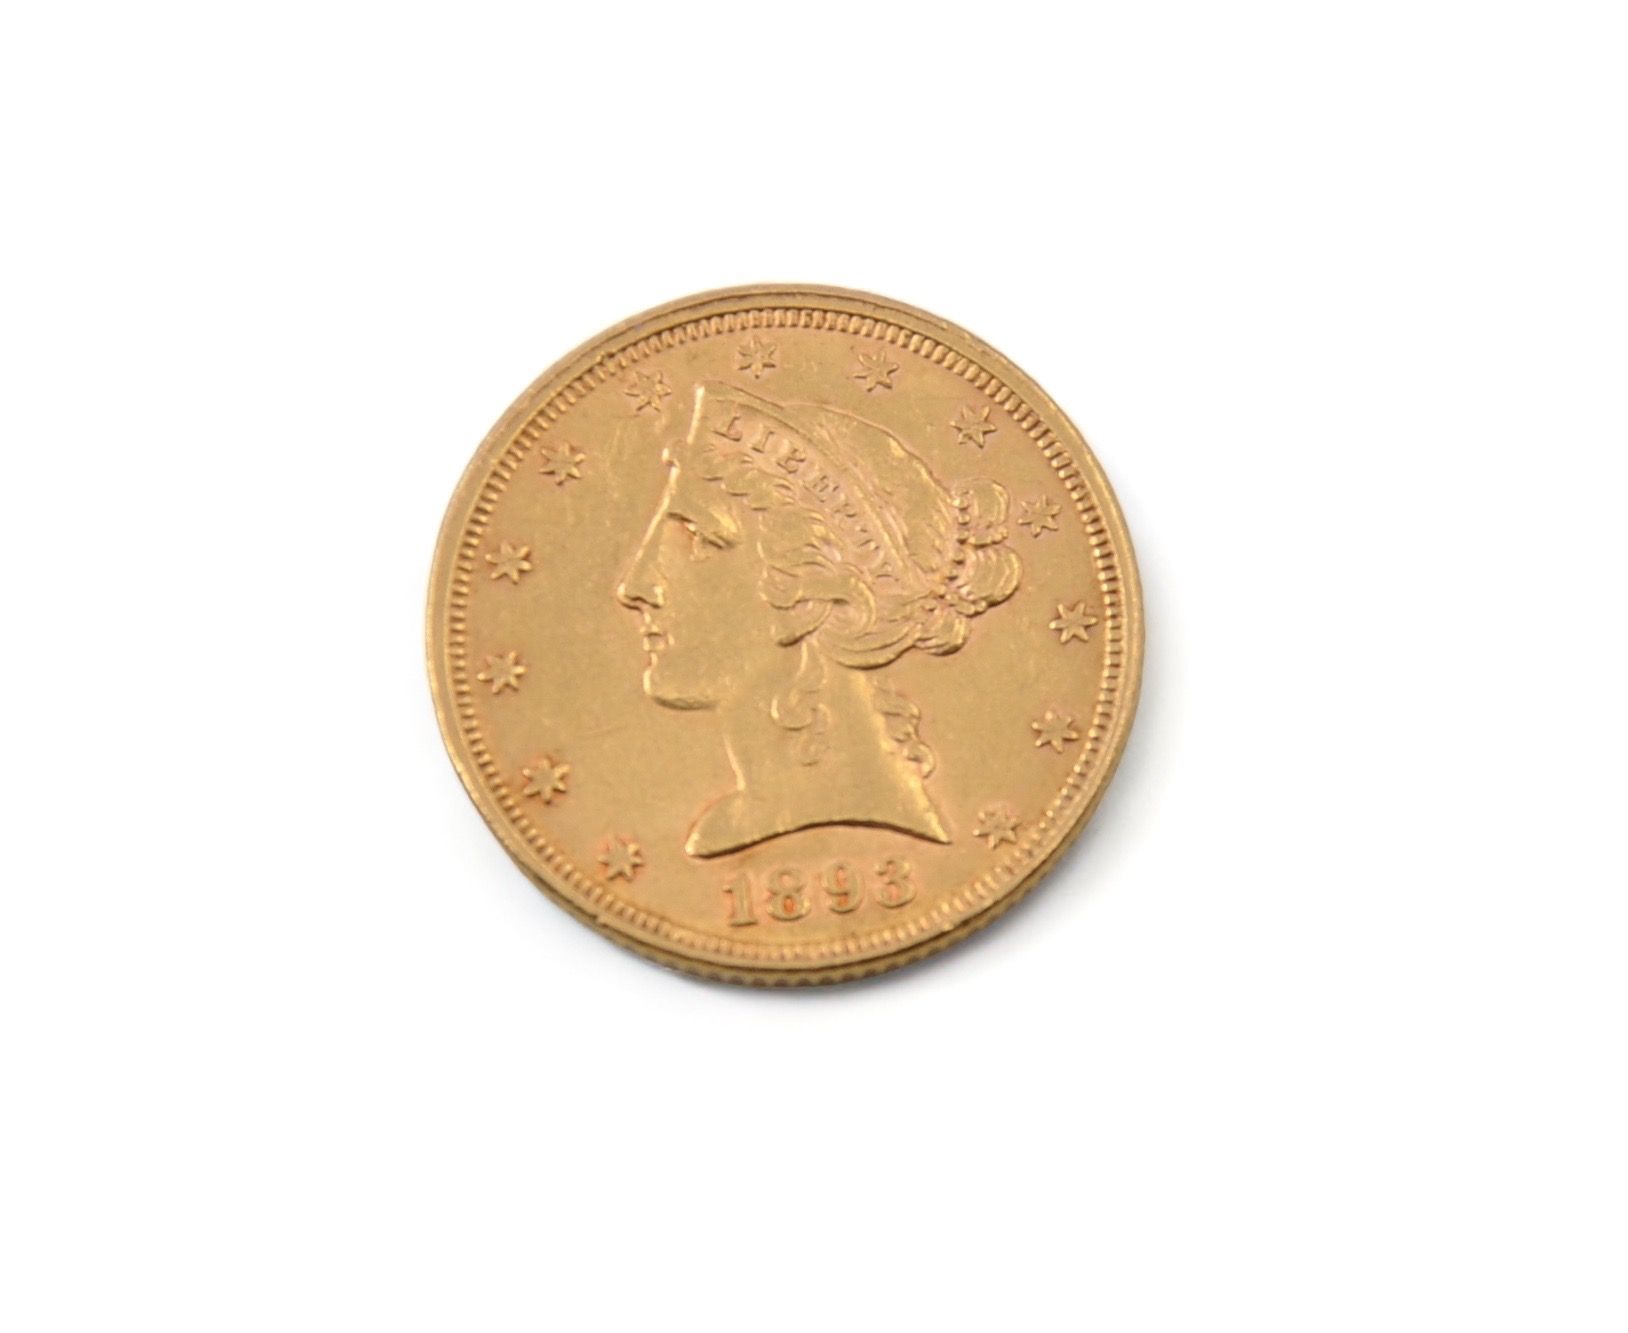 Null 5 Liberty americano d'oro 1893
Peso: 8,3 g

Premio ridotto per questo lotto&hellip;